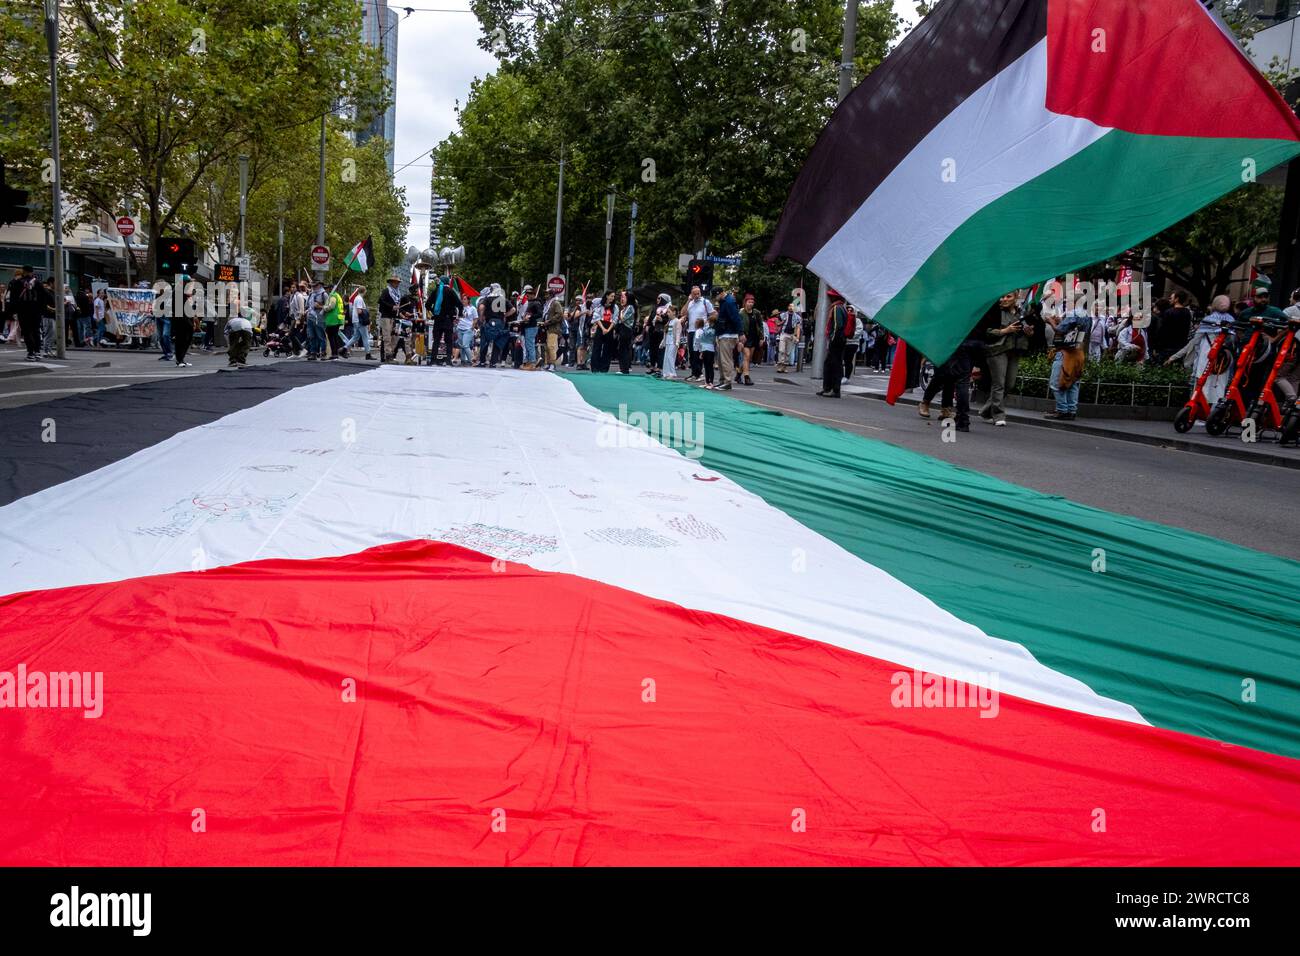 Drapeaux palestiniens lors d'une manifestation pro-palestinienne à Melbourne, Victoria, Australie Banque D'Images